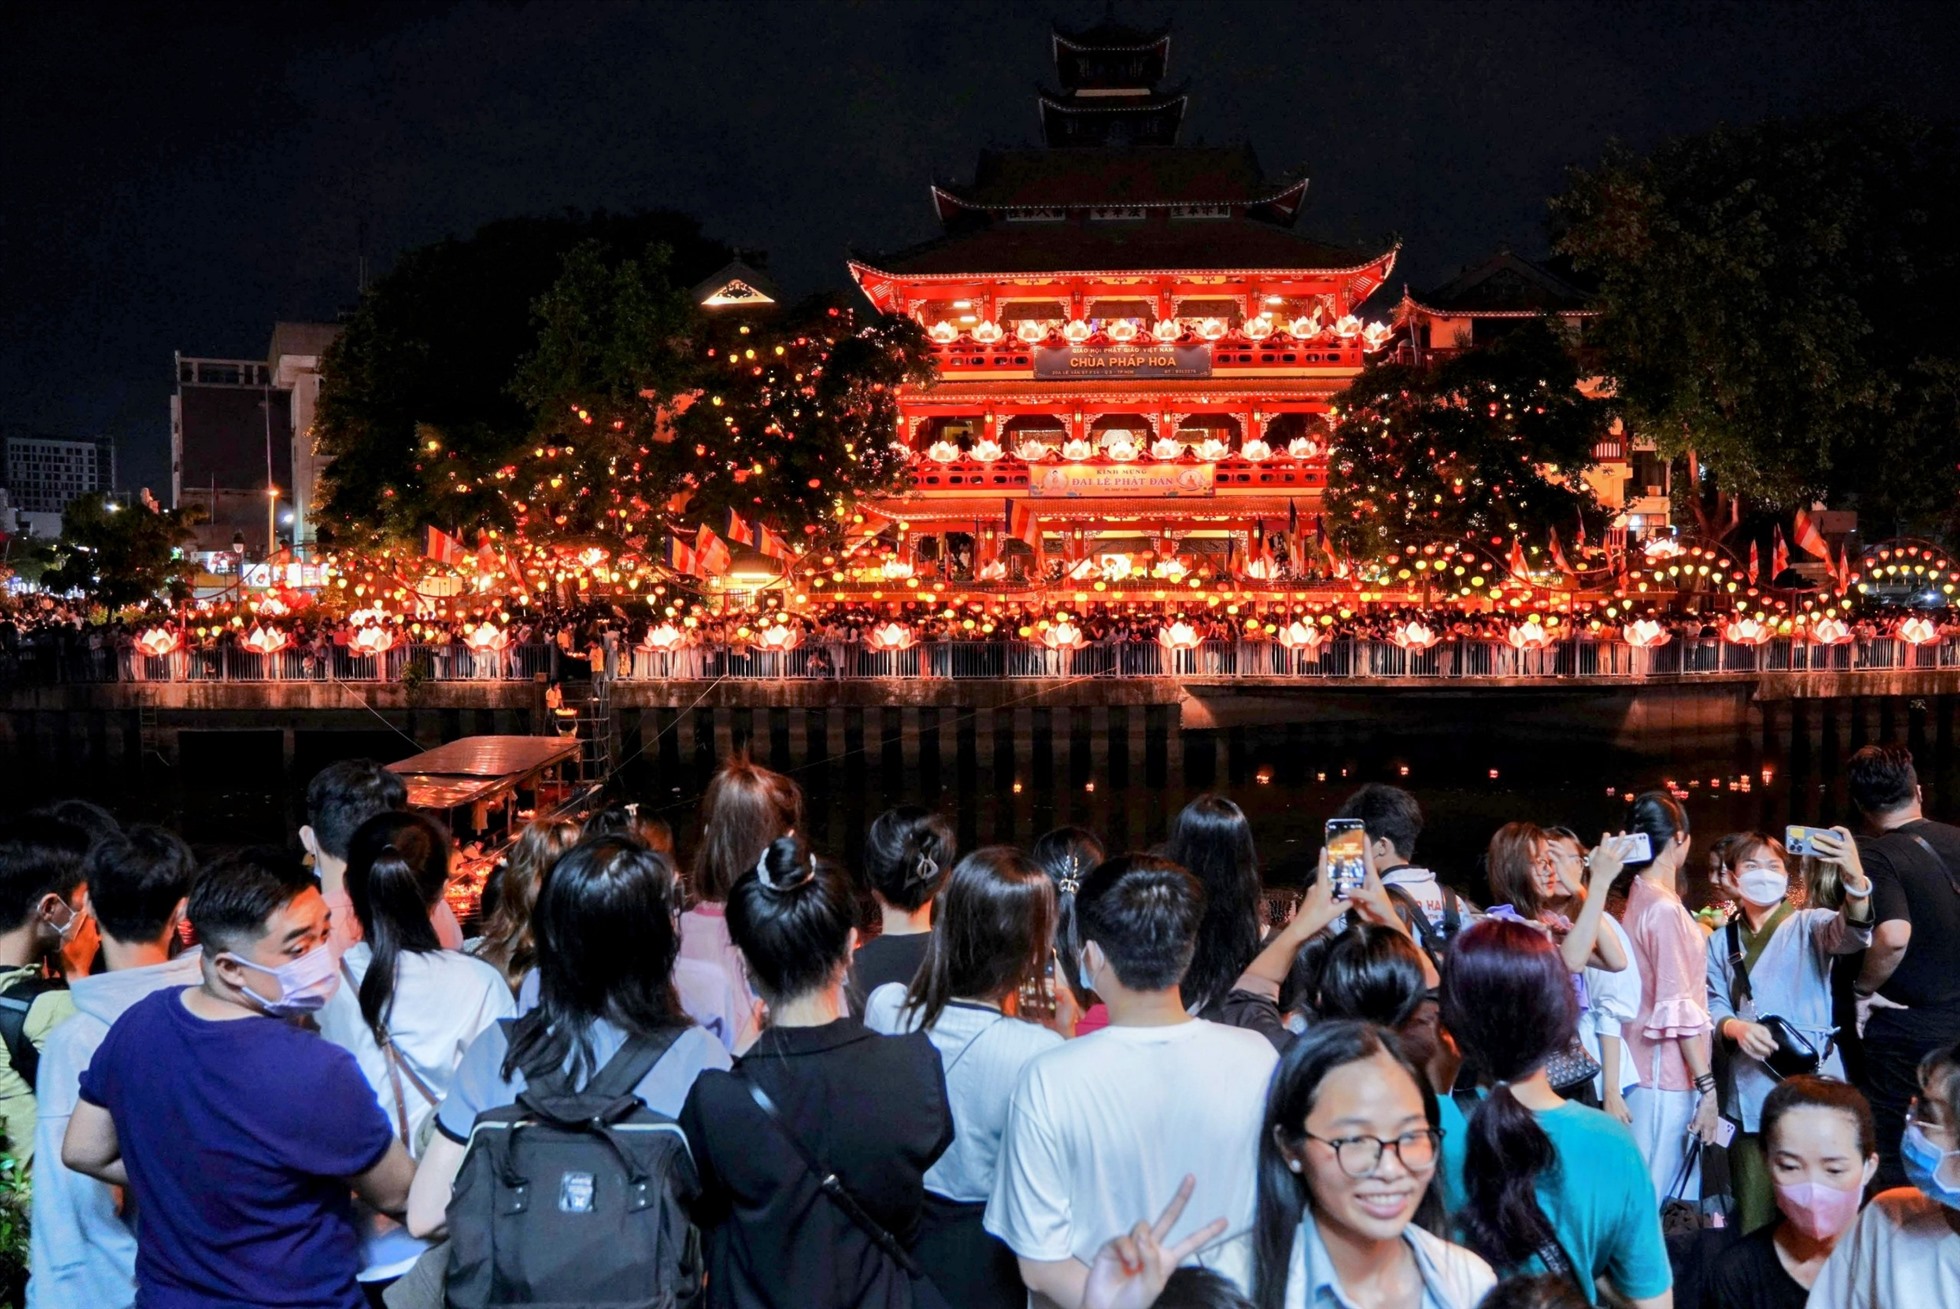 Lễ thả hoa đăng là sự kiện được chùa Pháp Hoa tổ chức vào mỗi dịp Phật Đản hằng năm. Đây được coi là lễ hội thả hoa đăng lớn nhất tại TP Hồ Chí Minh.